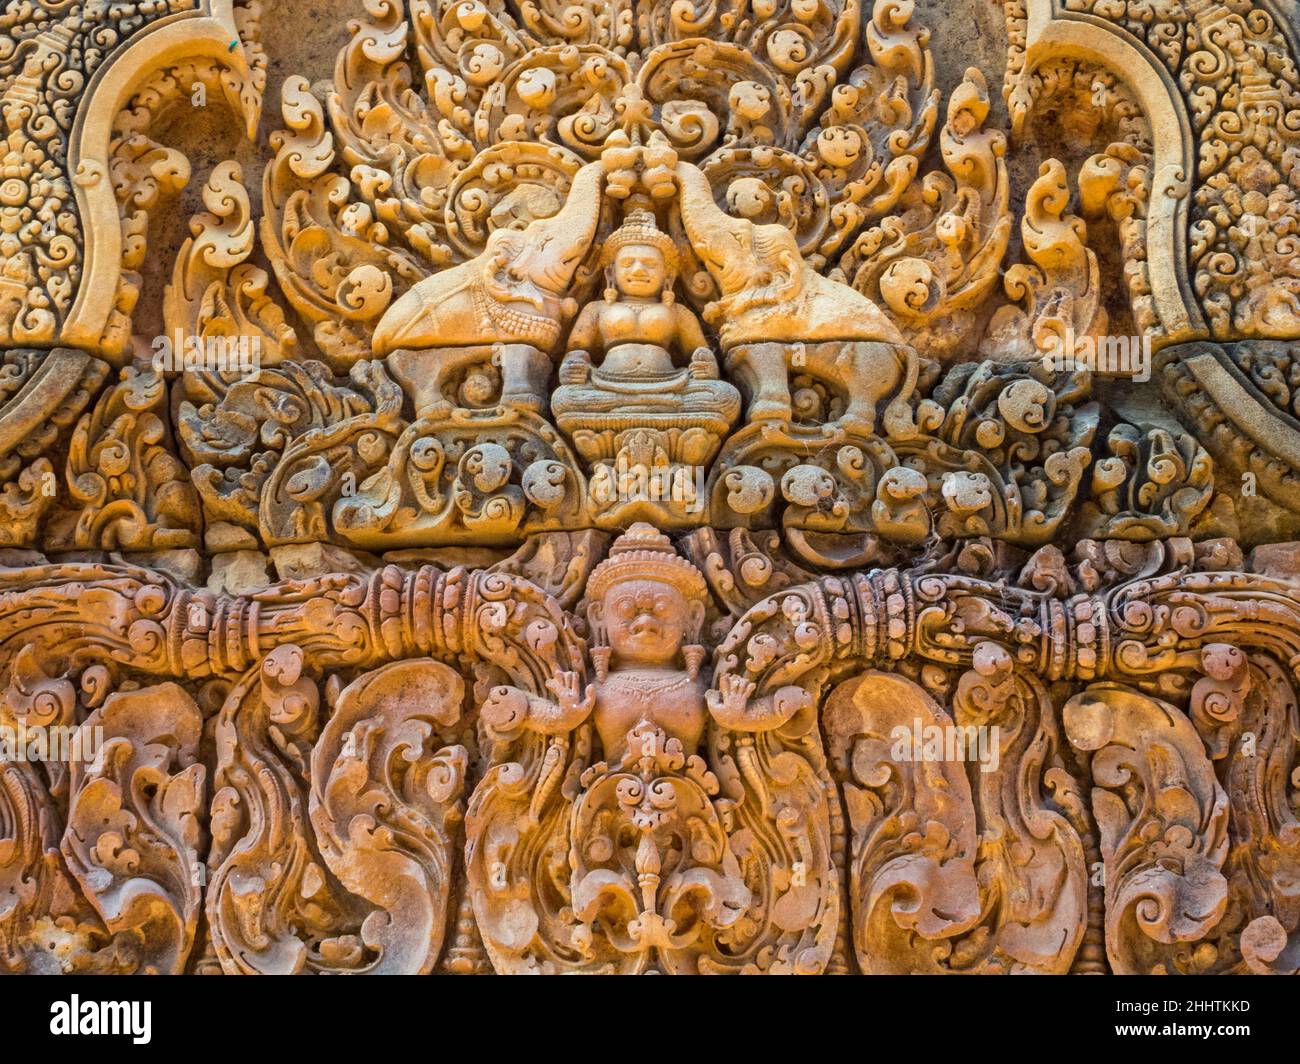 La diosa hindú Lakshmi en un muro de la 'Ciudadela de las Mujeres' - Banteay Srei, Camboya Foto de stock